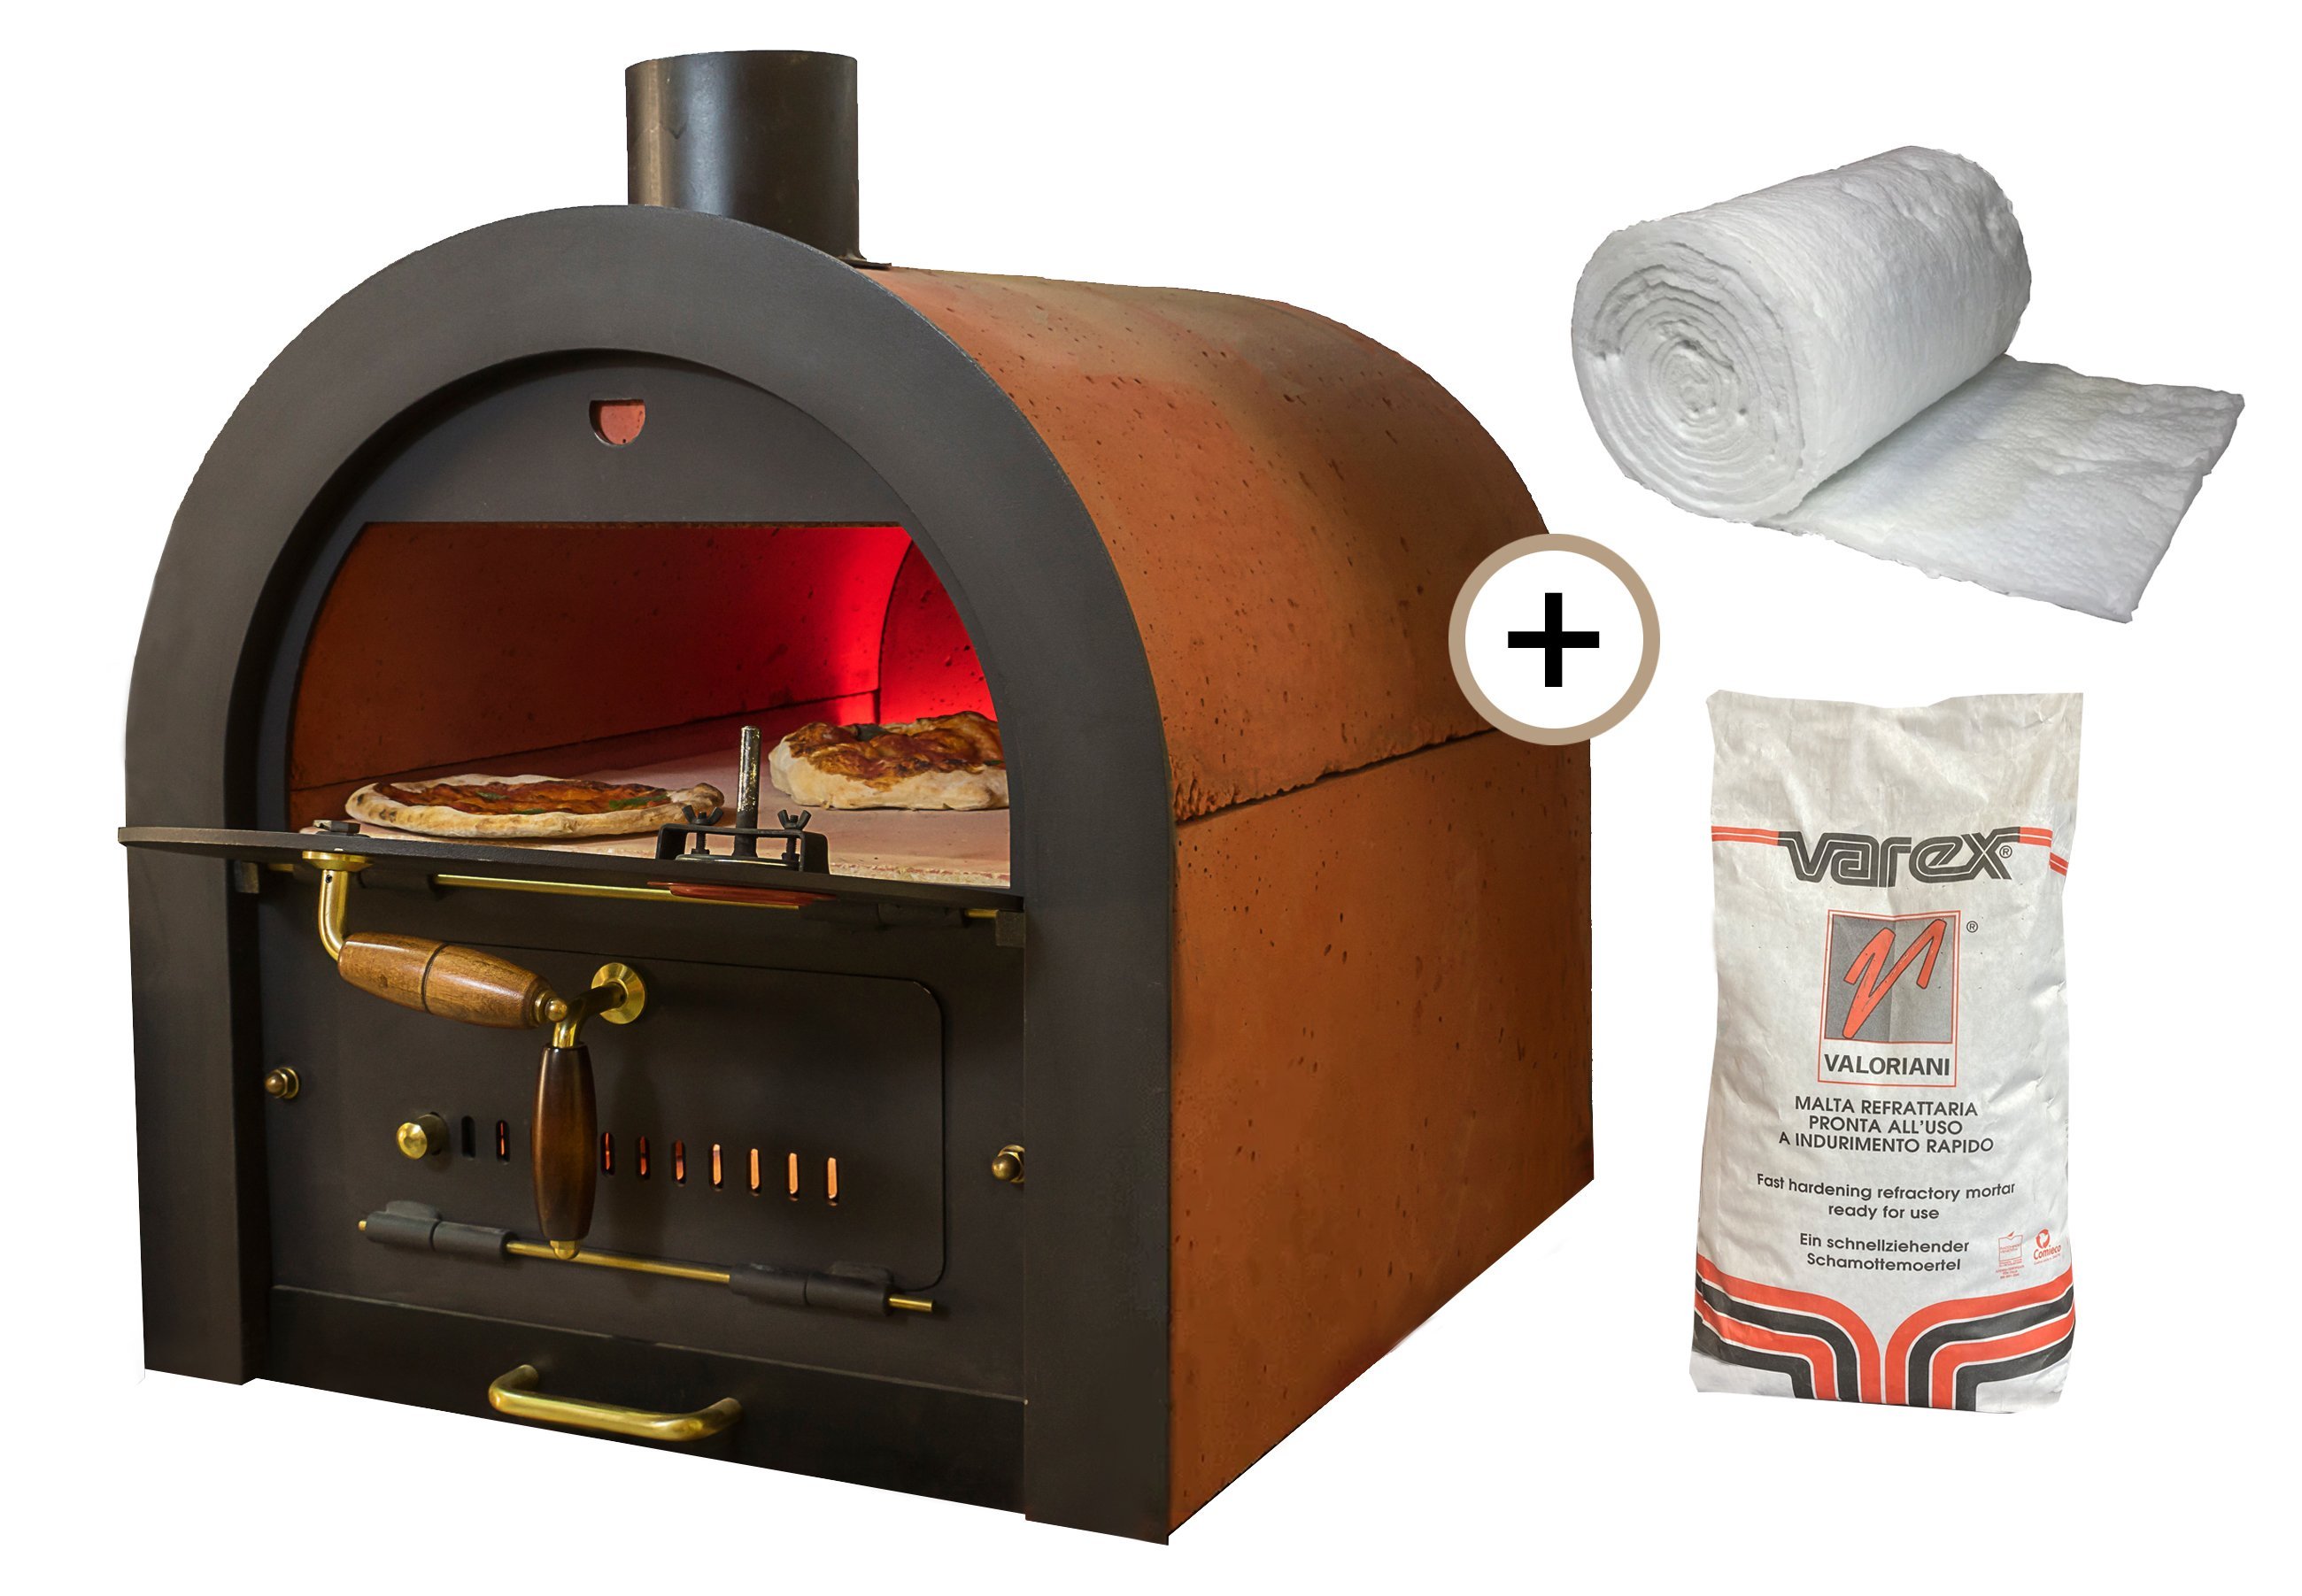 Bausatz für Pizza- & Holzbackofen von Valoriani inkl. Isolationsmaterial, indirekte Befeuerung, 40x60cm Backfläche